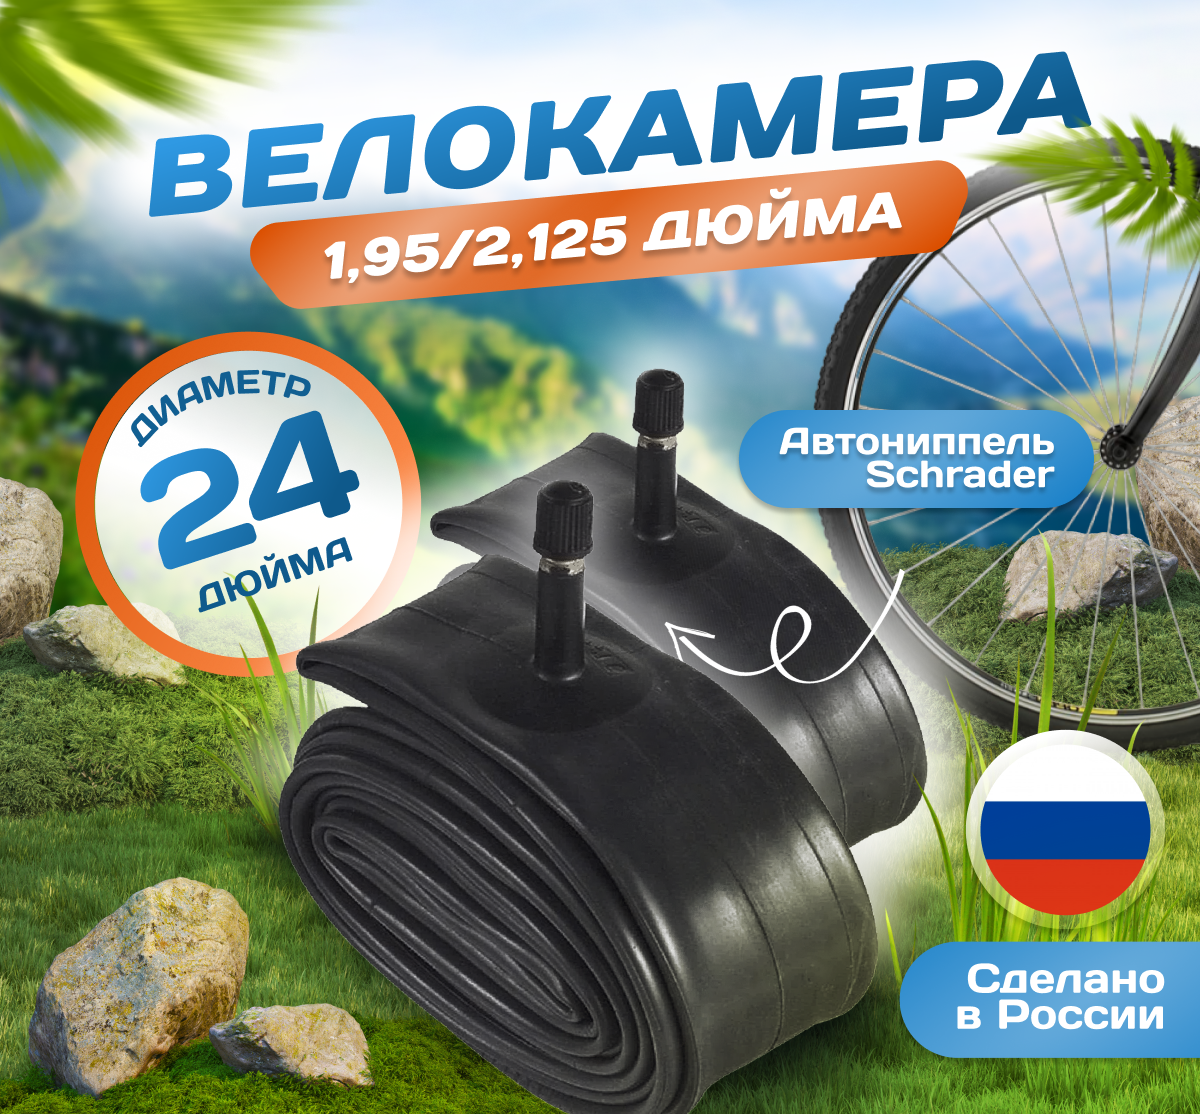 Камера для велосипеда 24х195-2125 (Комплект 2шт) (47/57-507) Российского производства. Автониппель Schrader 32mm